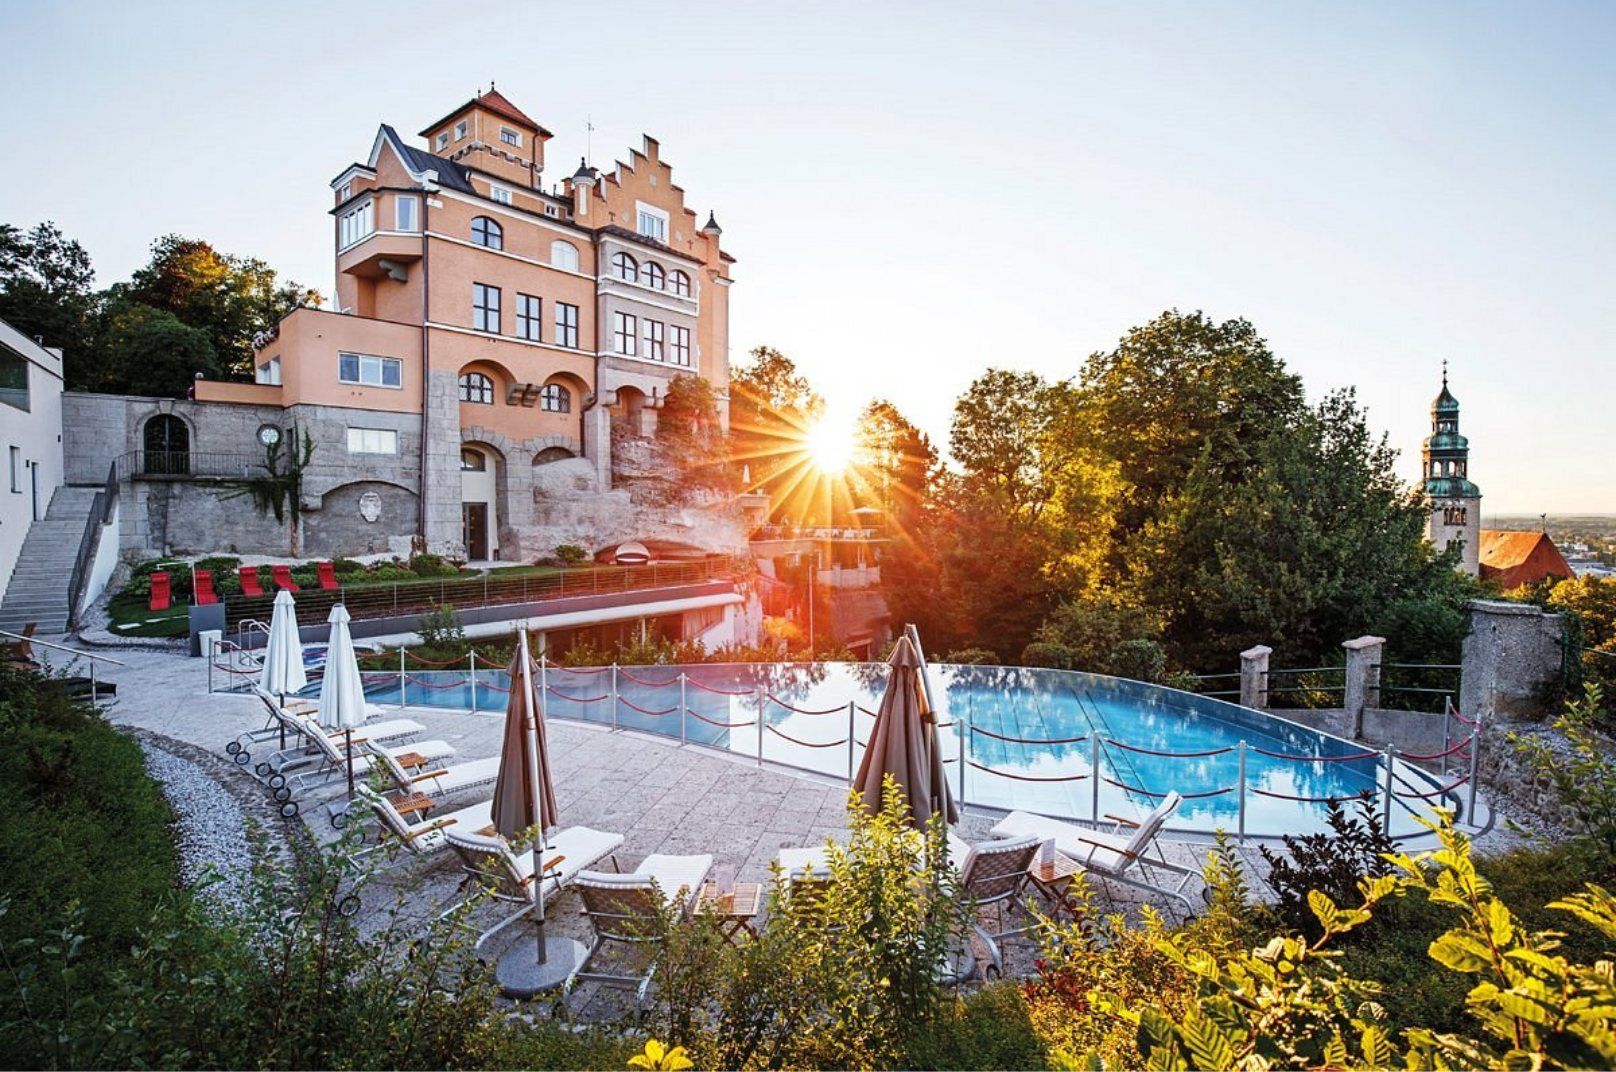 5-star hotels in Salzburg, Austria